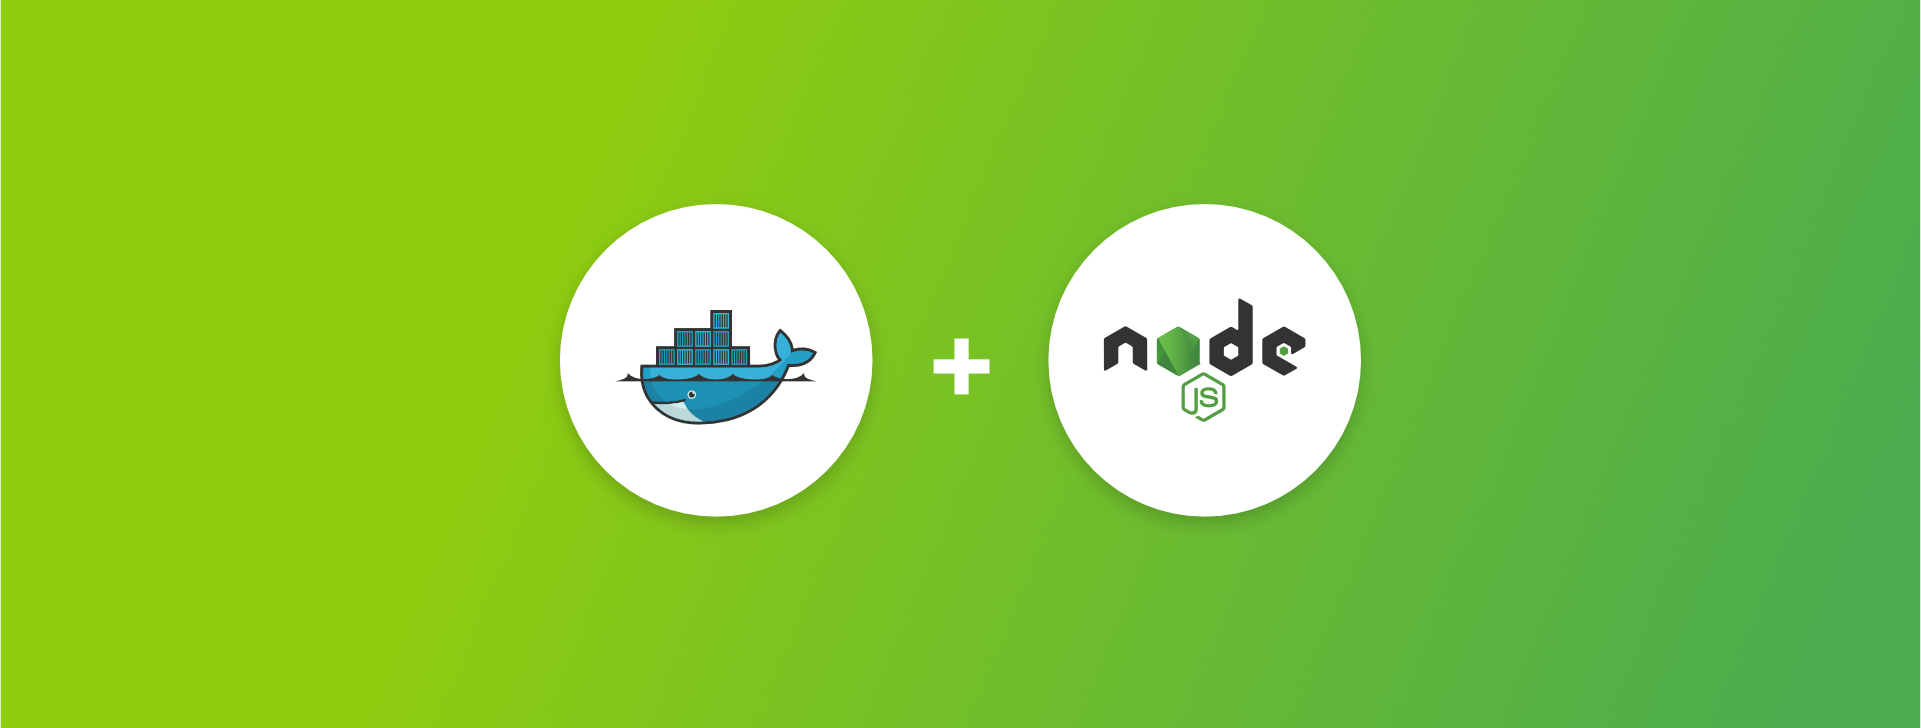 Node.js and Docker logo